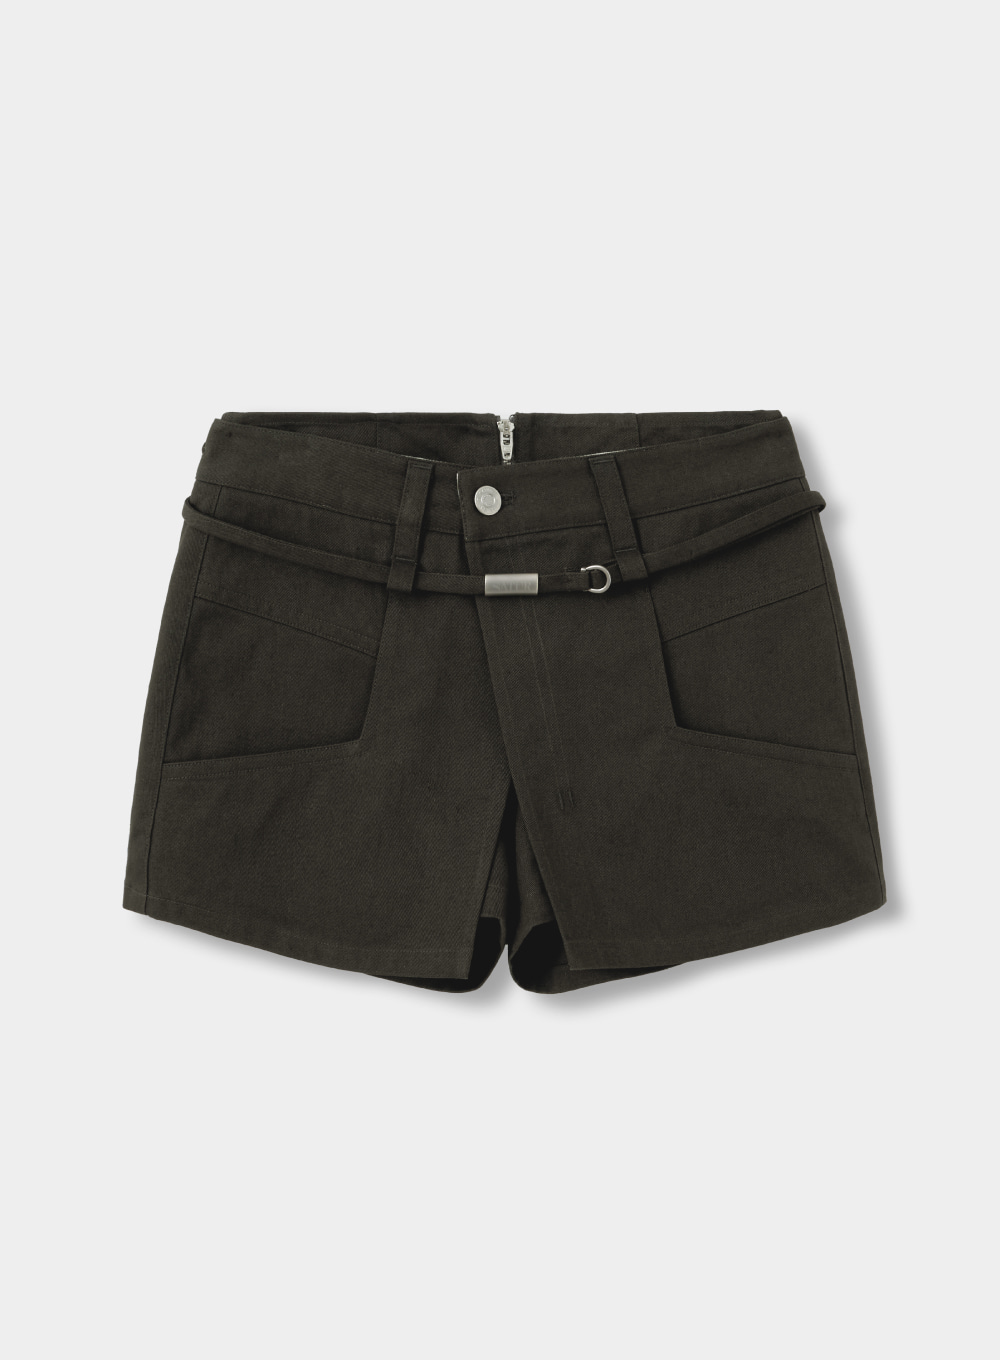 [6월 14일 예약배송]Pitton Cotton Skirt Pants - Shadow Chacoal